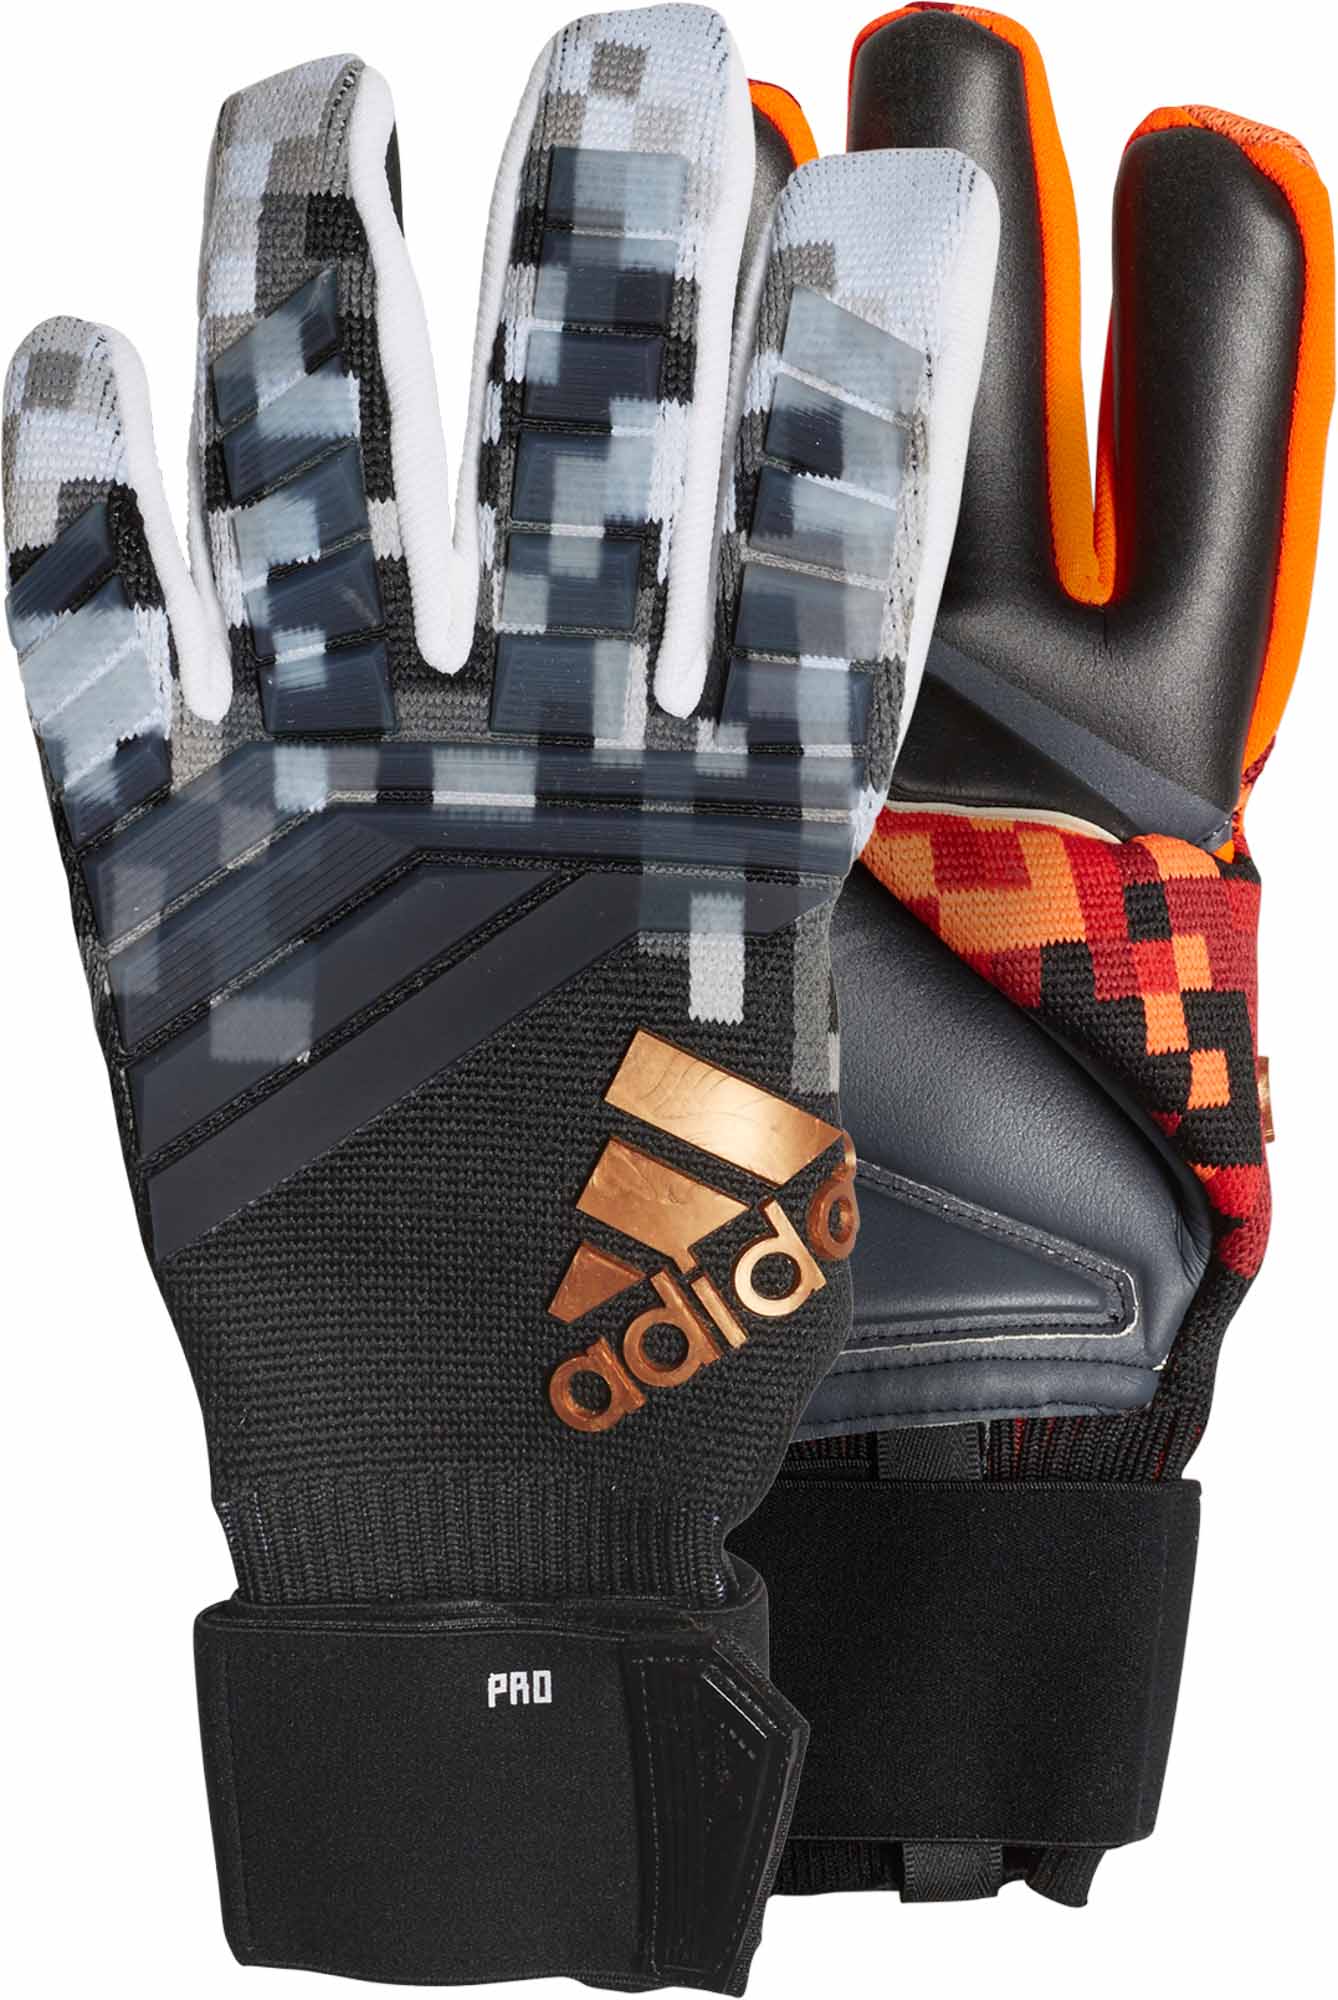 adidas predator pro telstar gloves